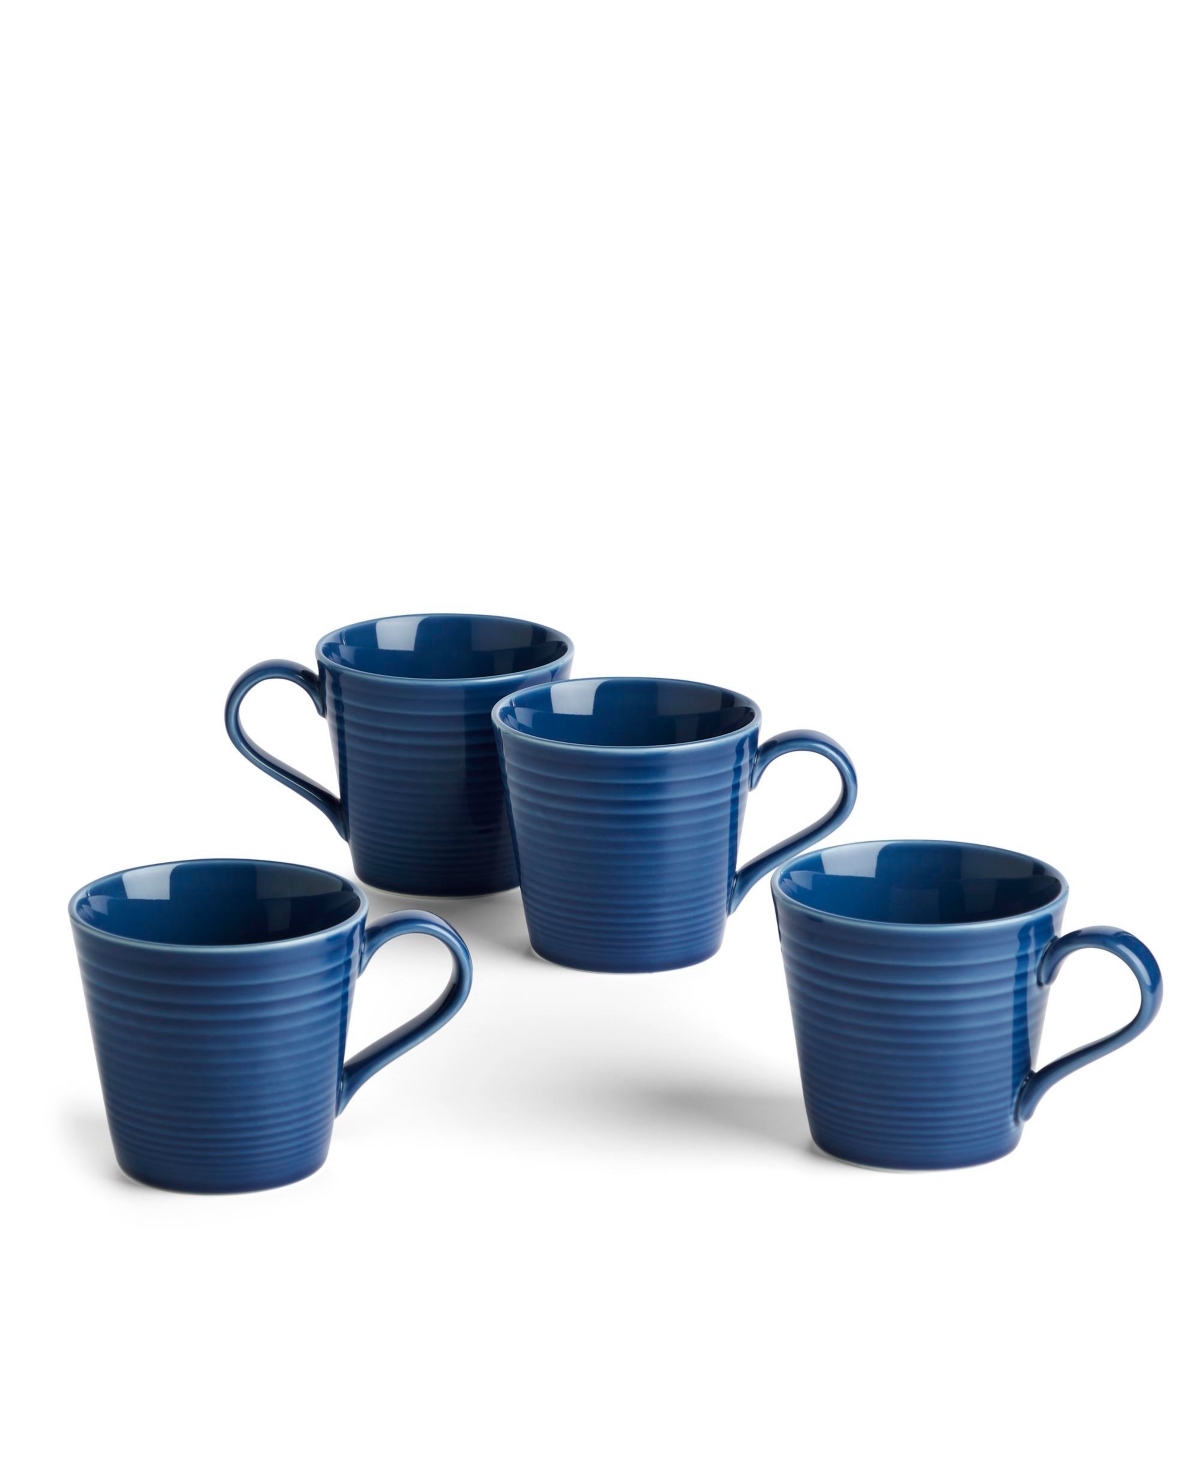 Maze Denim Mug 13.oz, Set of 4 - Blue